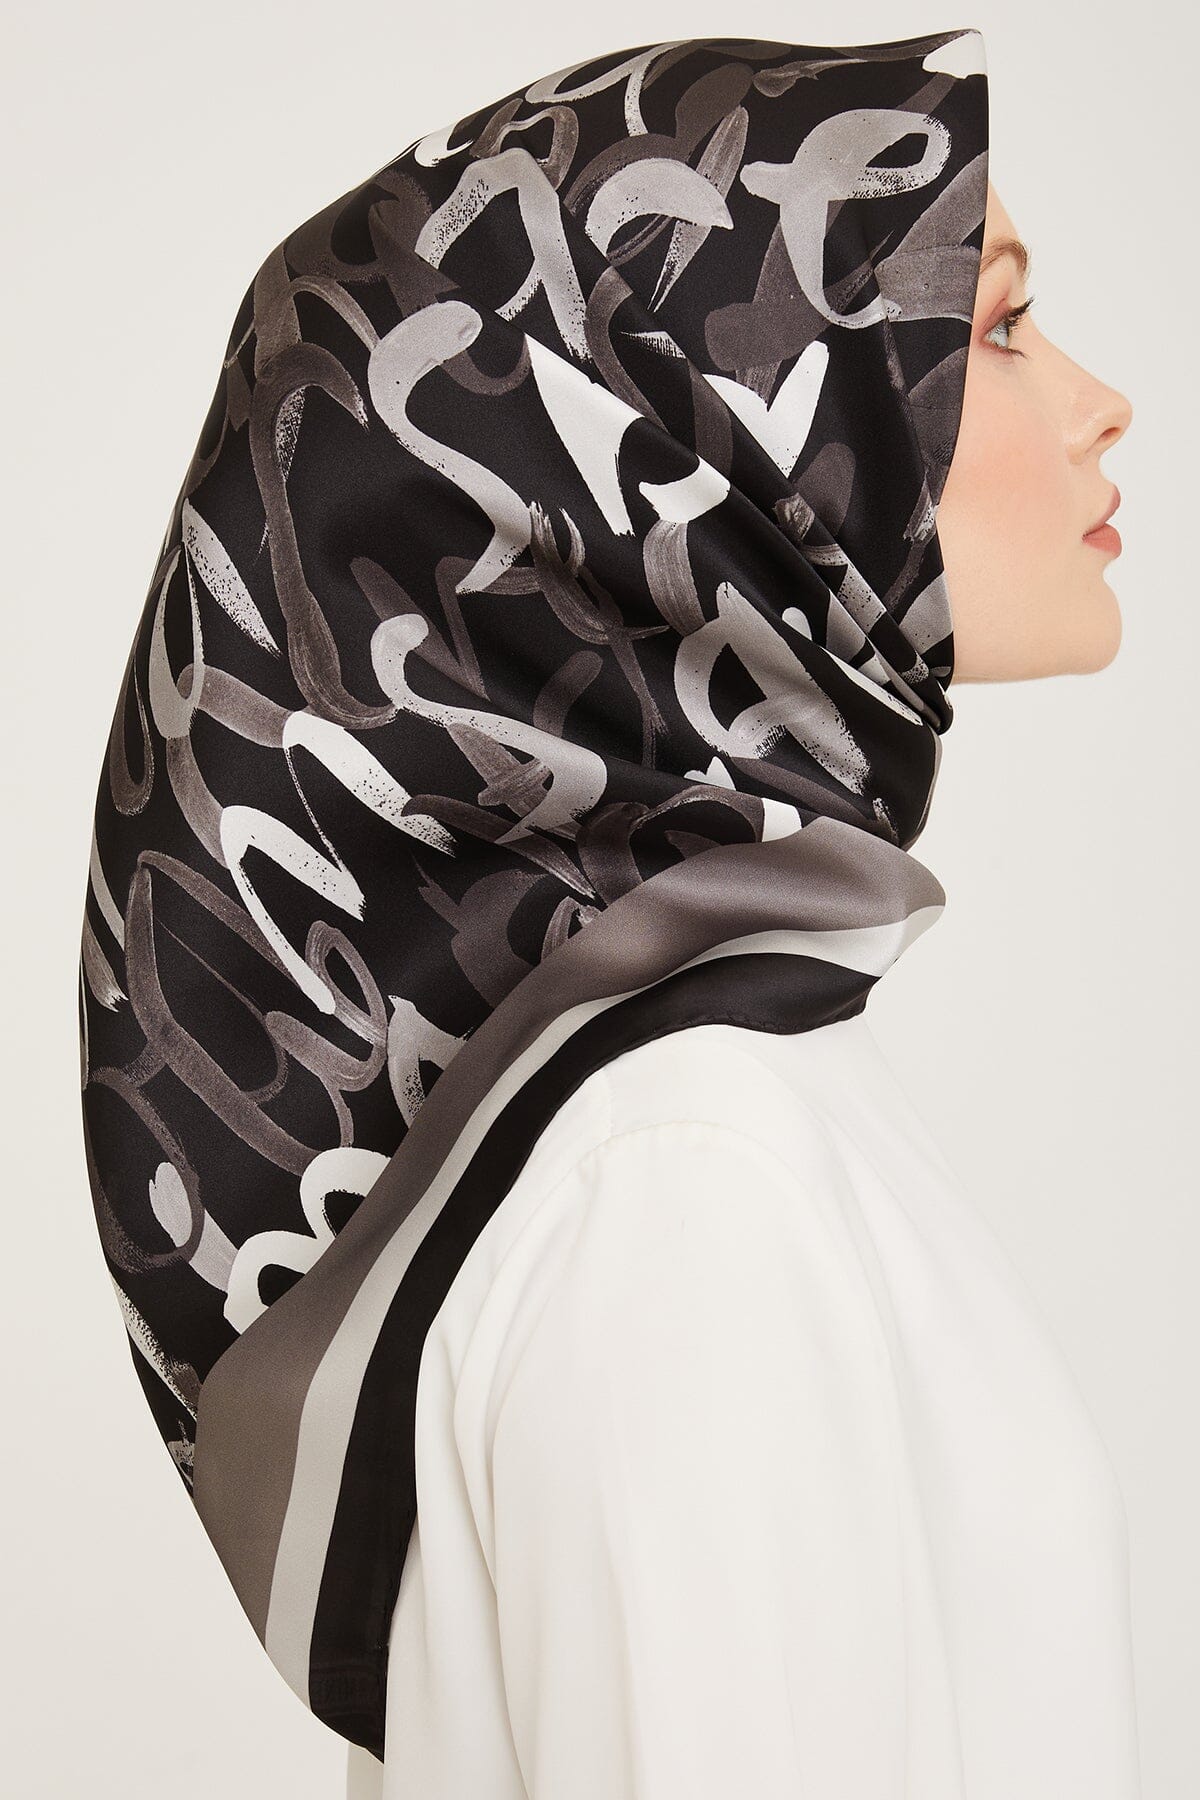 Armine Nudle Designer Silk Scarf #36 Silk Hijabs,Armine Armine 